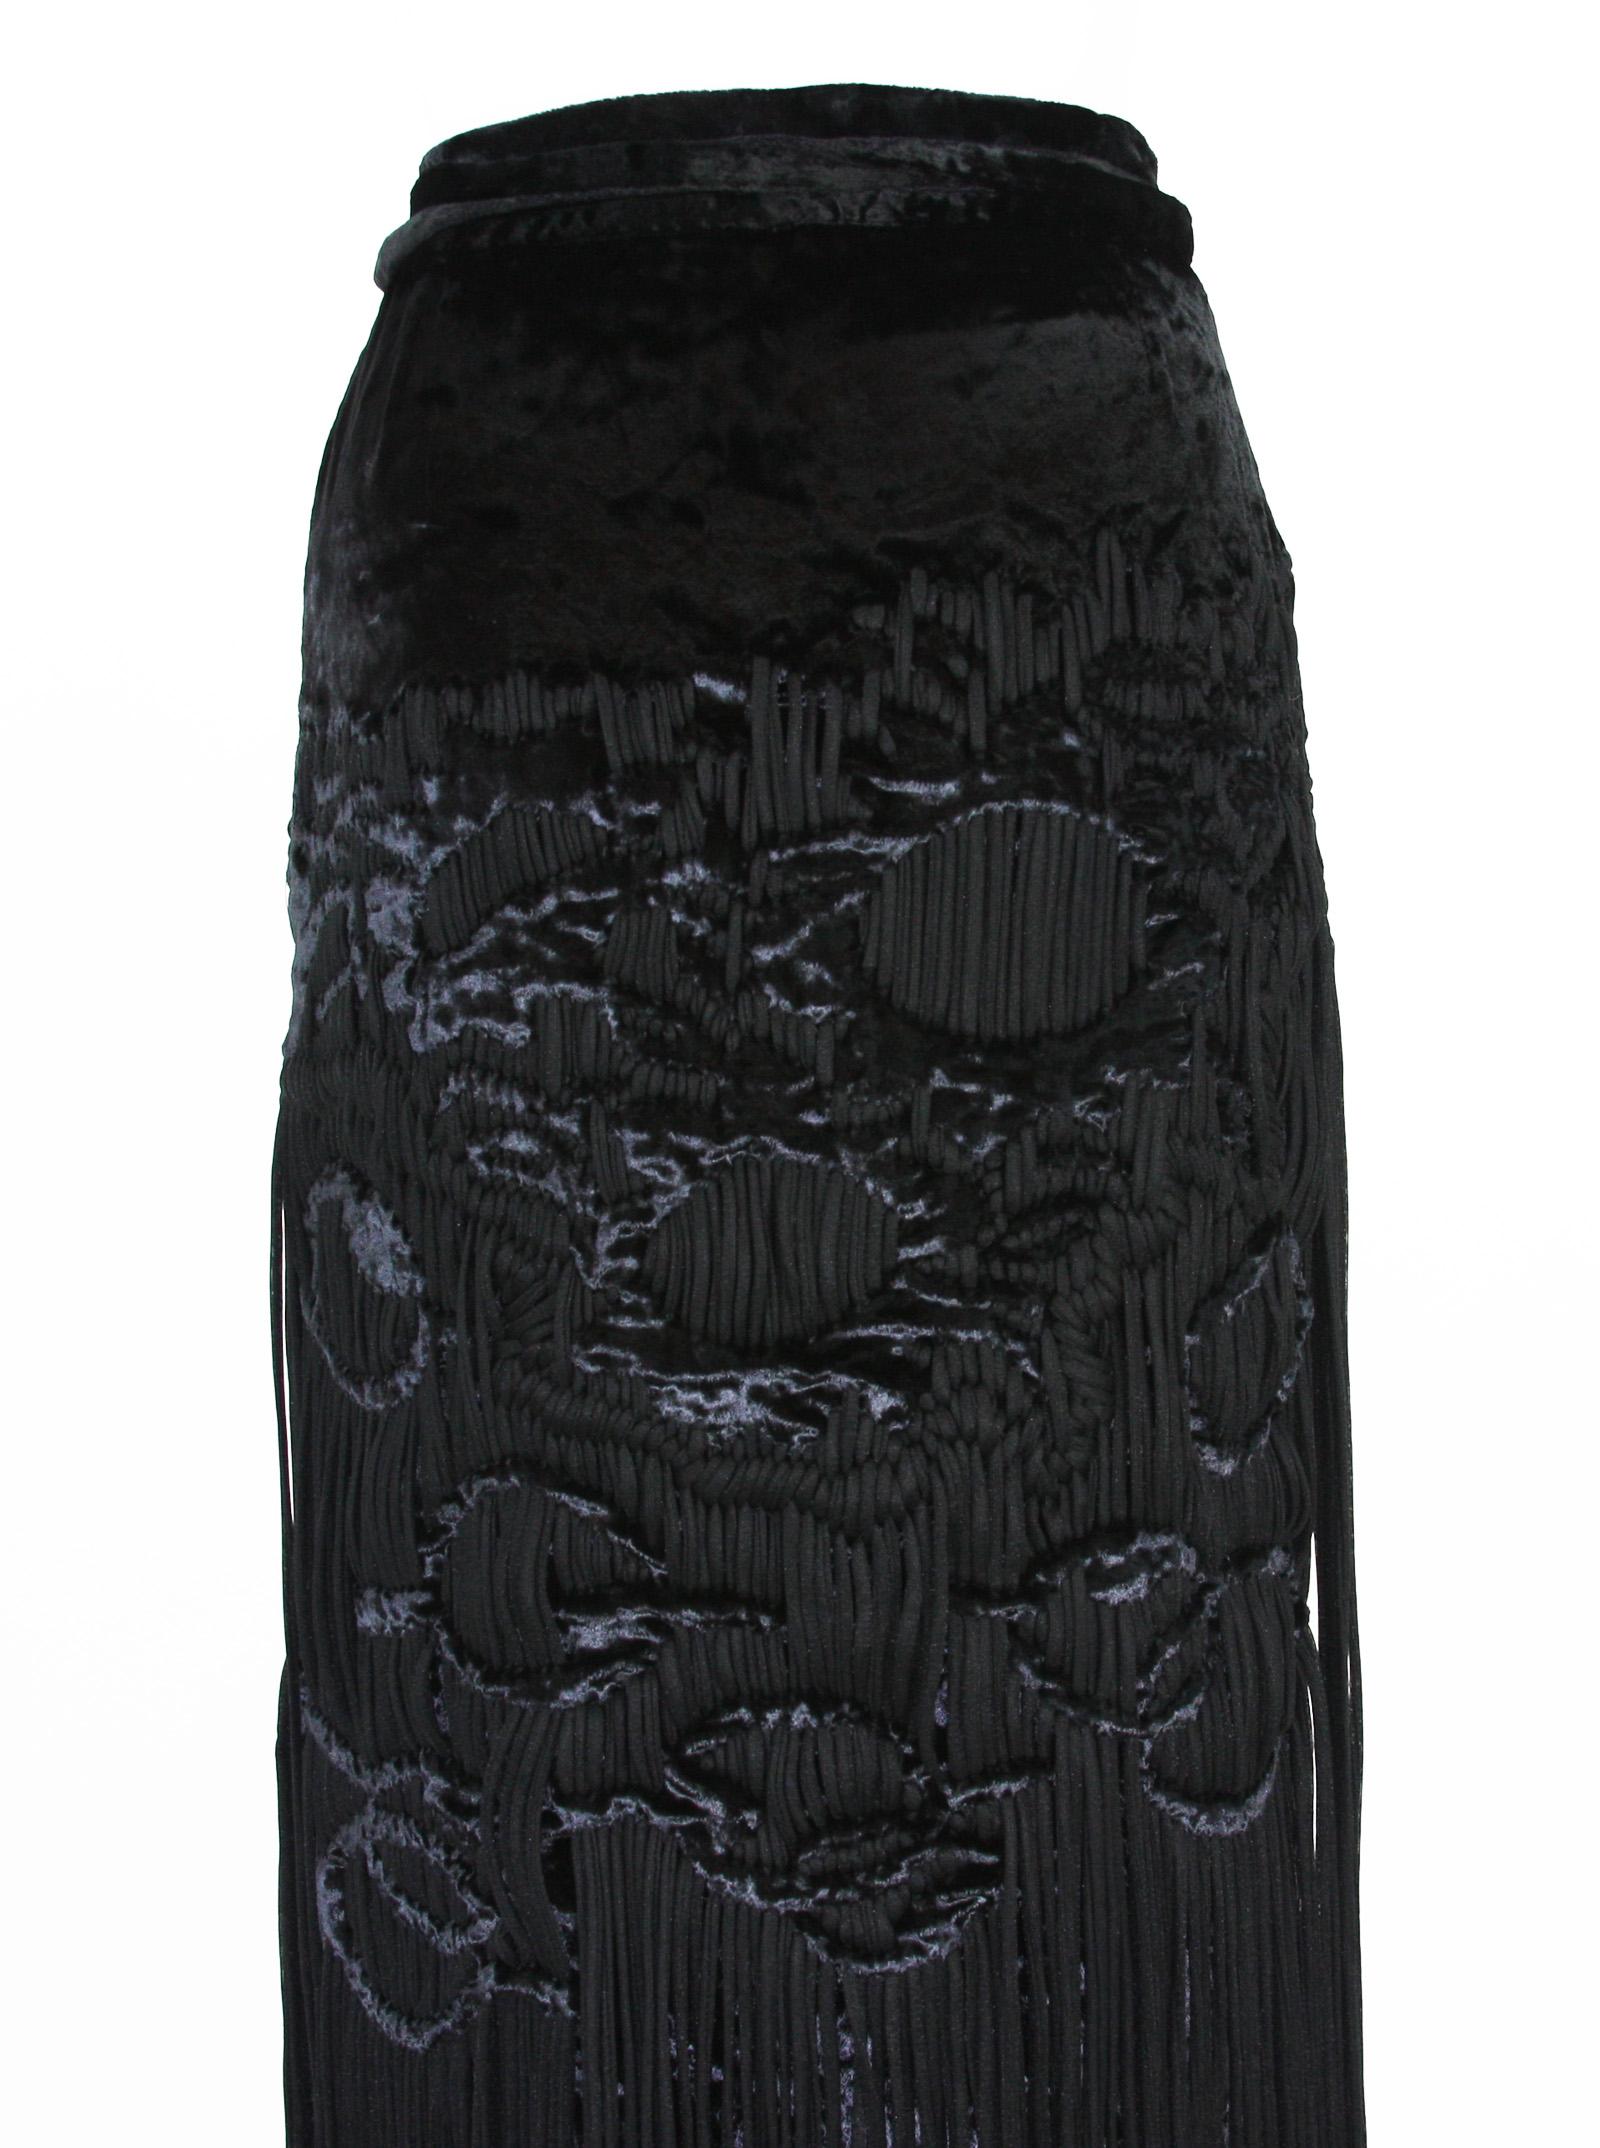 Tom Ford for Yves Saint Laurent 2001-2003 Collection Silk Top Velvet Skirt Suit  For Sale 11